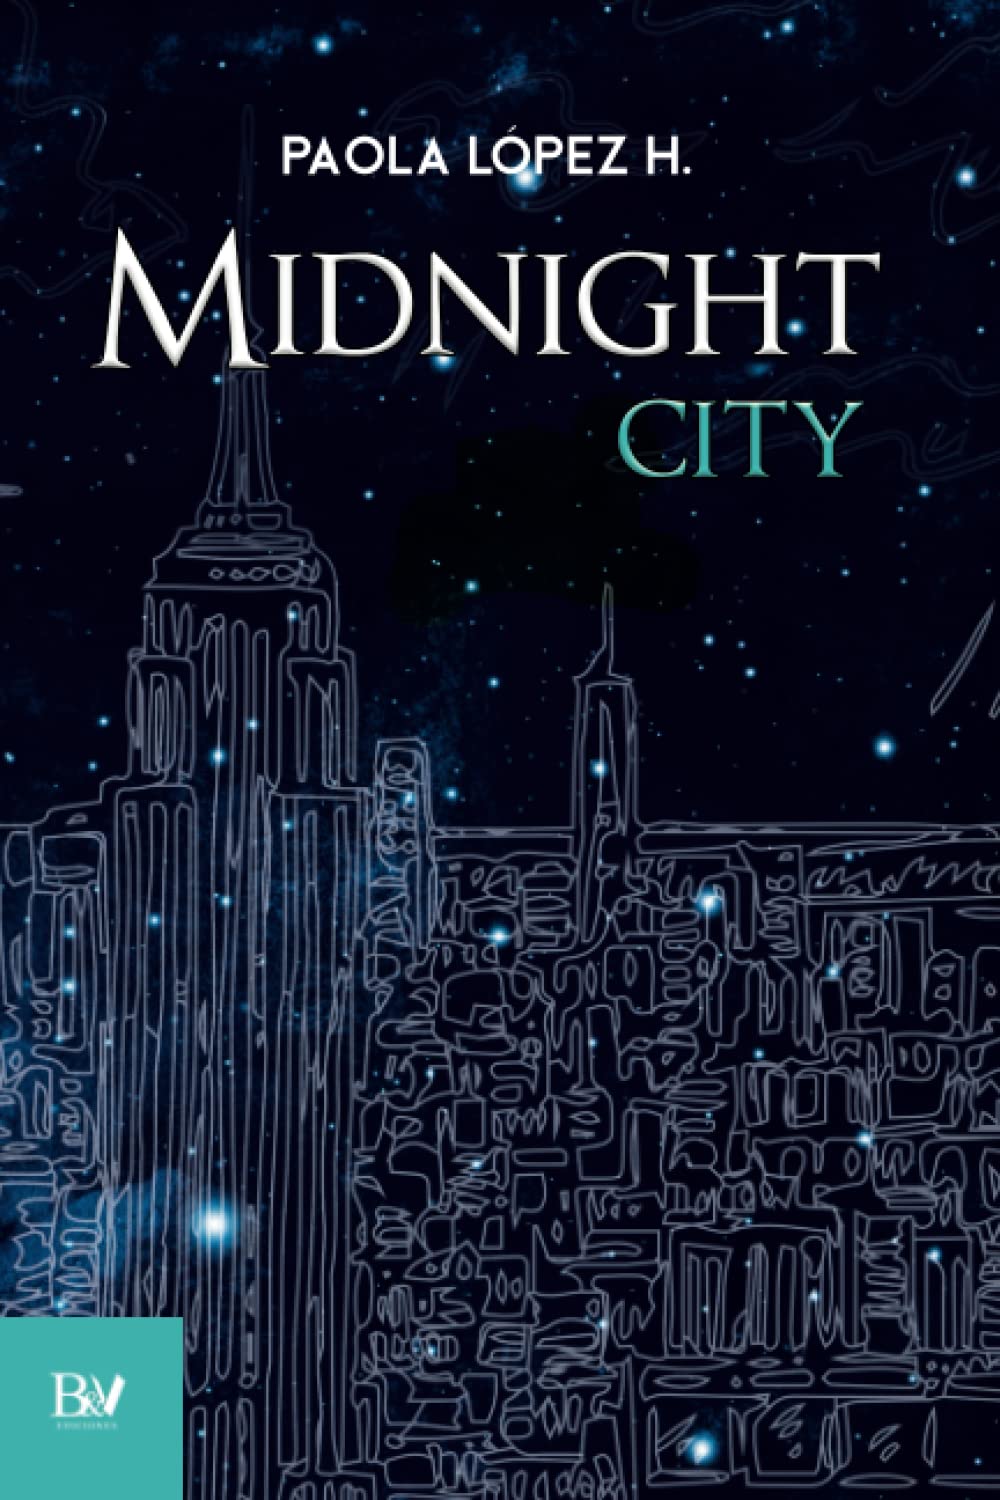 Libro: Midnight city por Paola López H